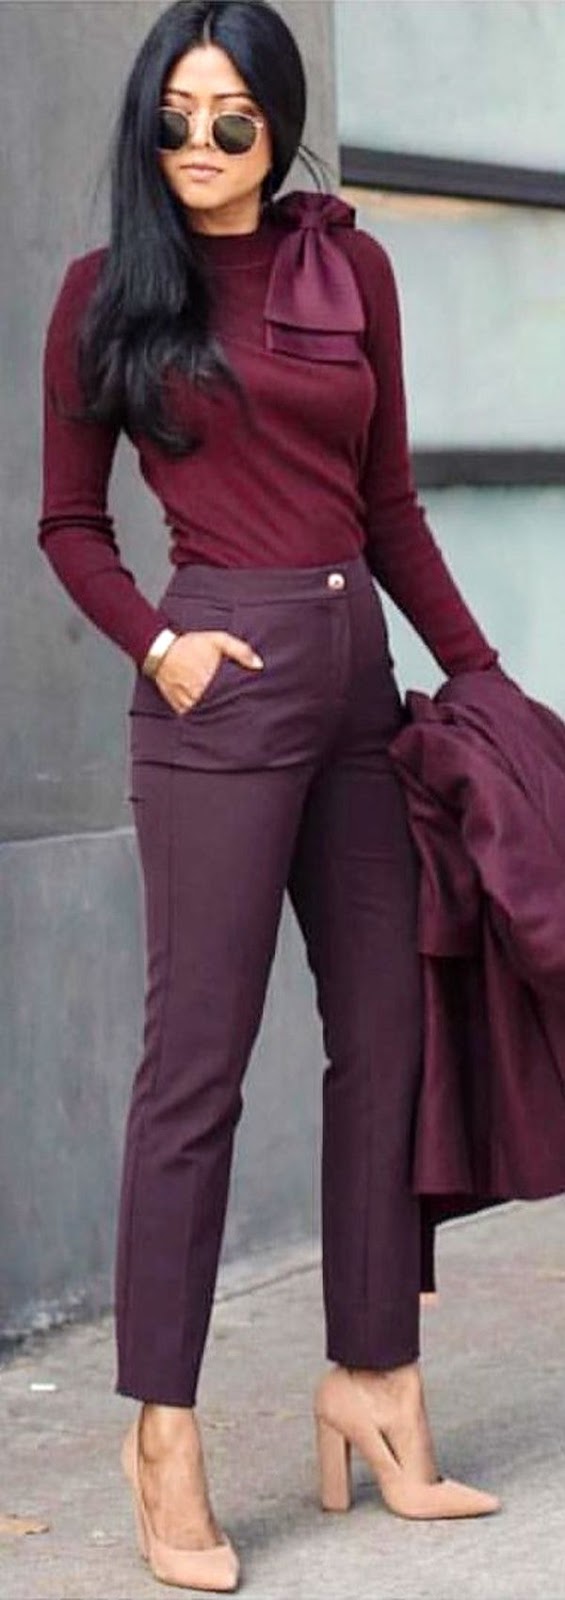 Burgundy look | blouse + pants + heels + blazer